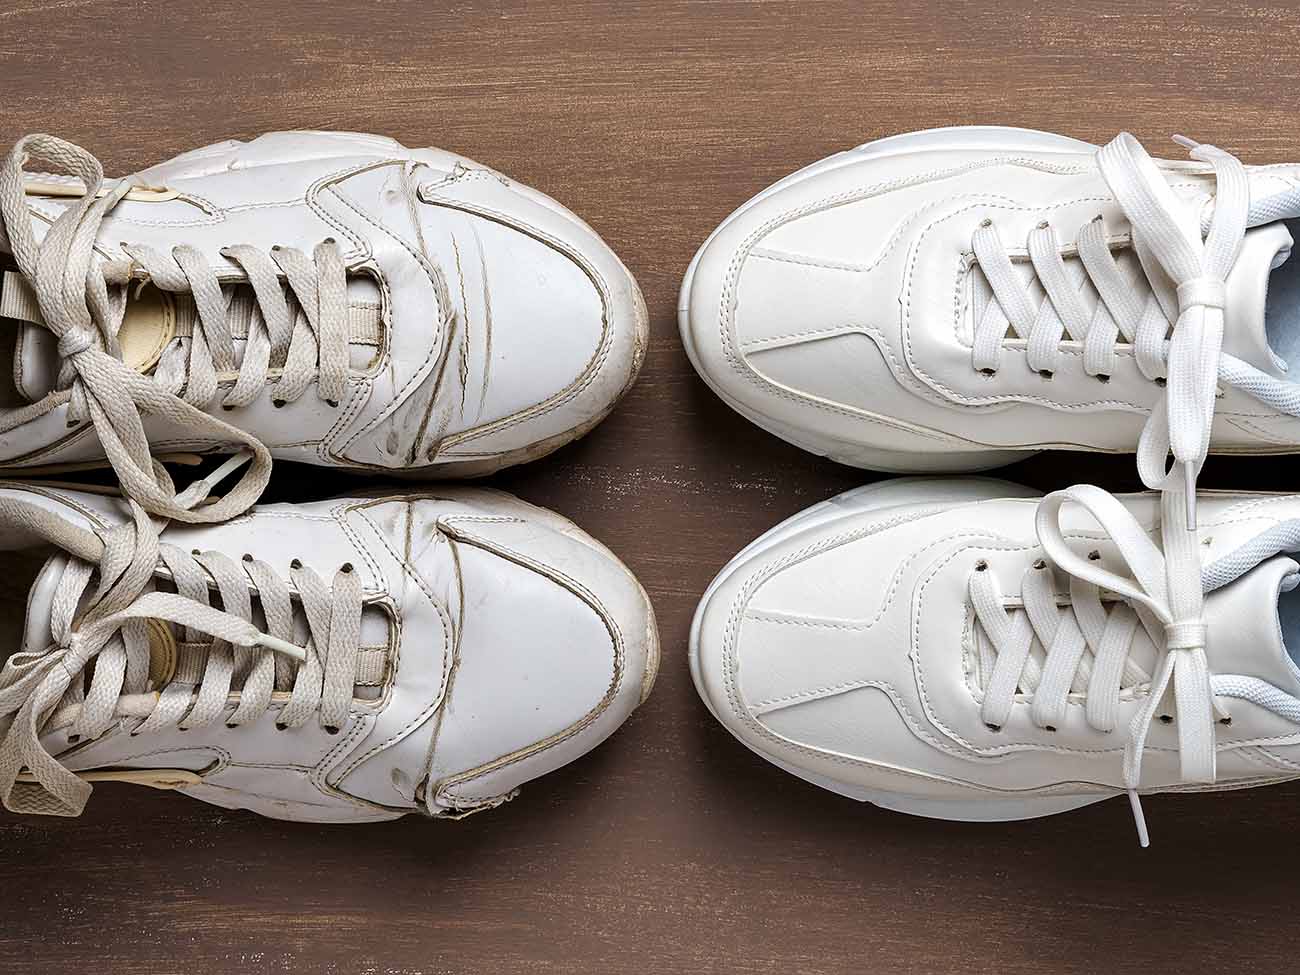 Dois pares de tênis brancos de frente um para o outro. O tênis do lado esquerdo está sujo e encardido. O tênis do lado direito está limpo.